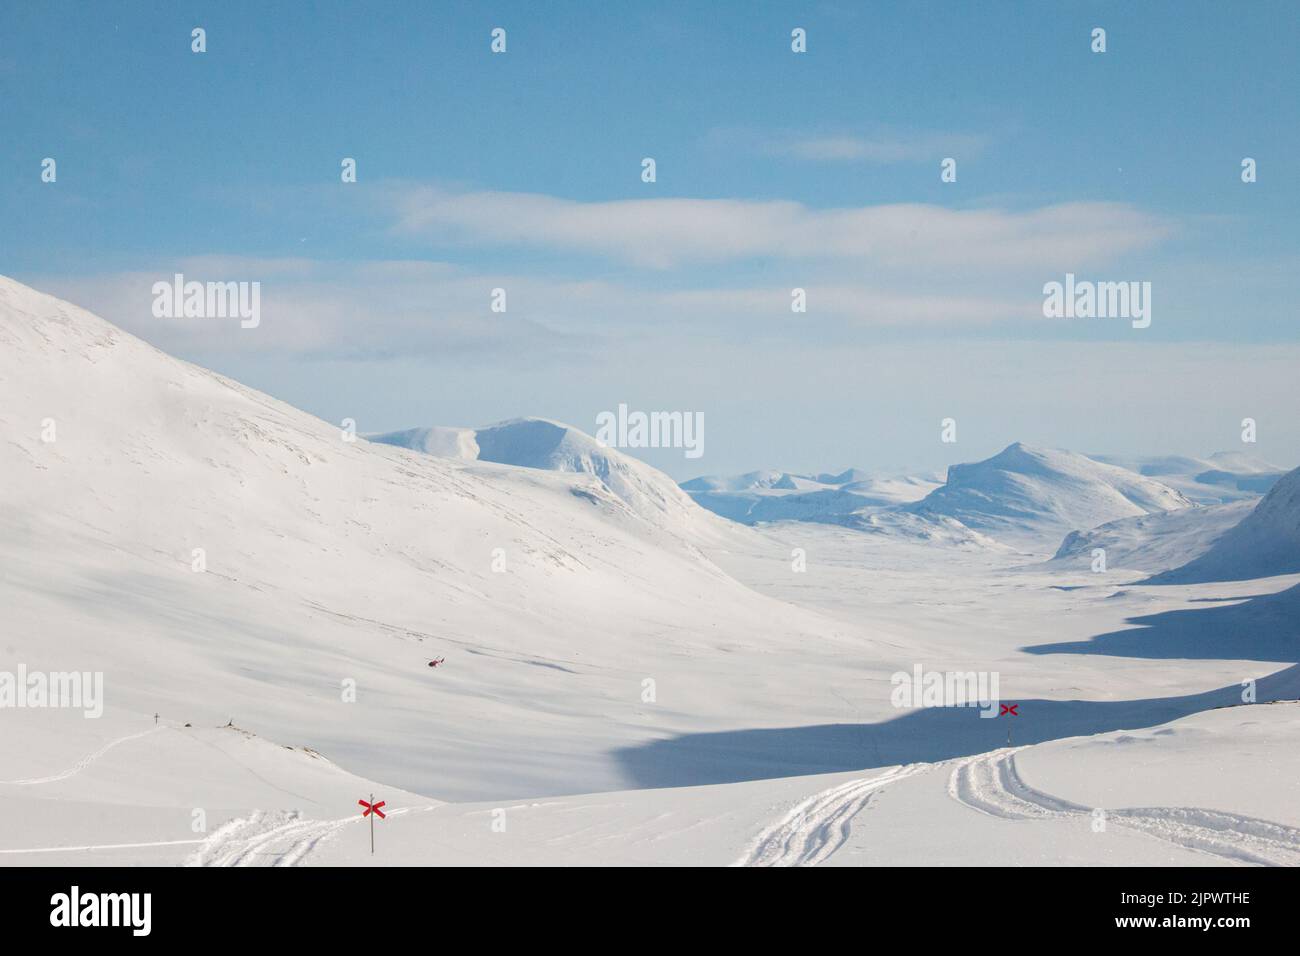 Un sendero de esquí Kungsleden que desciende desde el paso de montaña de Tjaktja hacia la cabaña de montaña de Salka, temporada de invierno, Laponia, Suecia Foto de stock